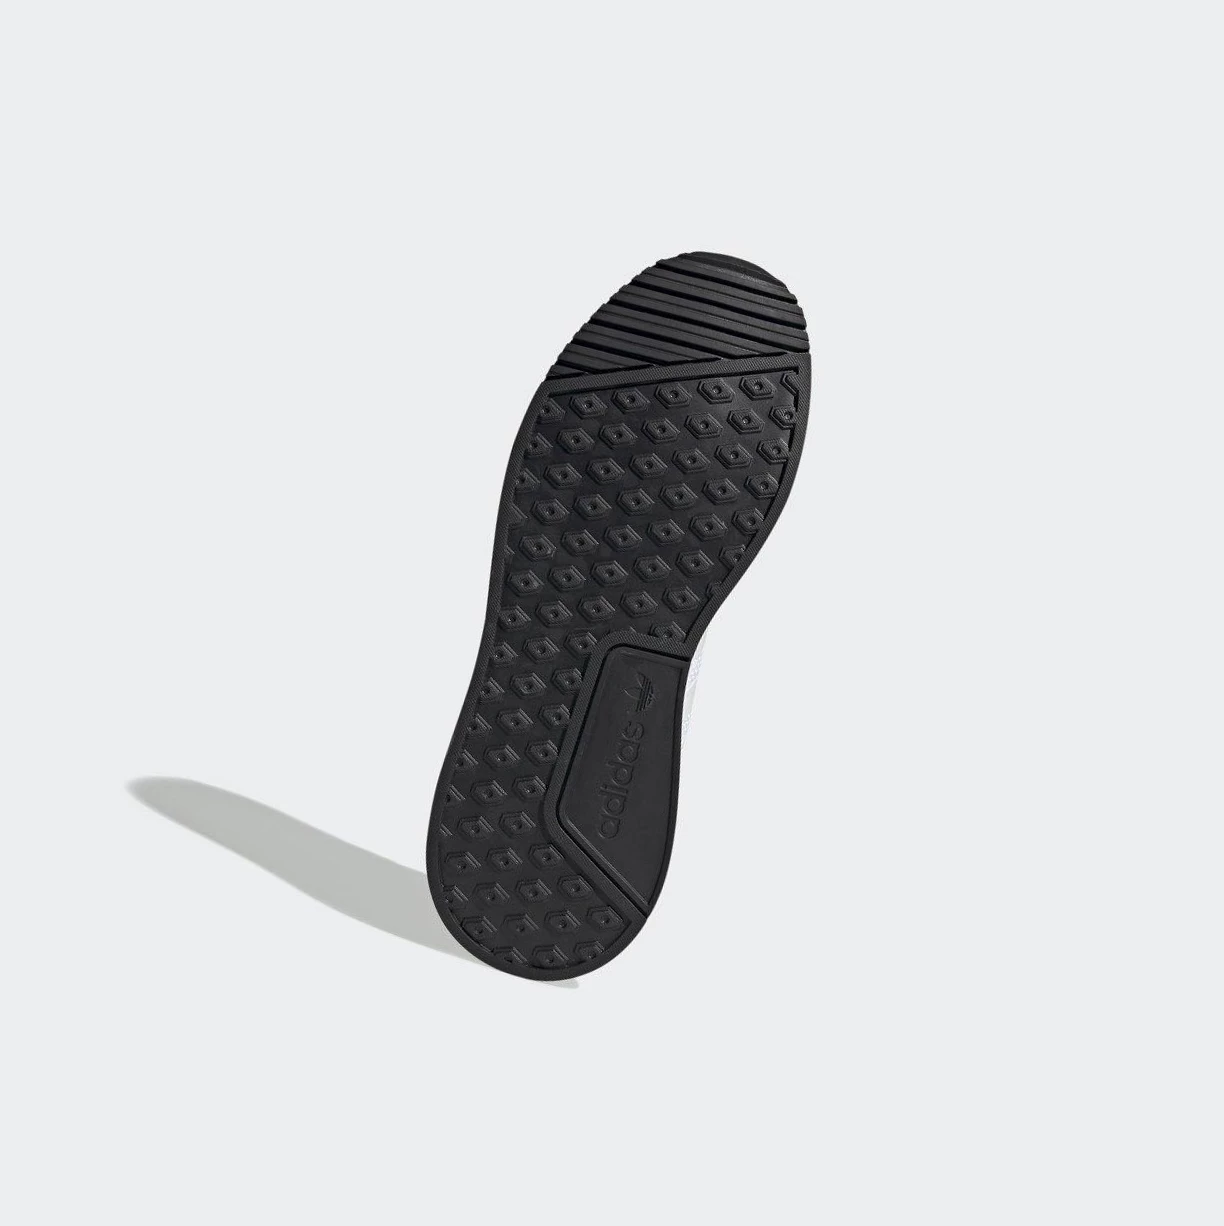 Originálne Topánky Adidas X_PLR S Panske Biele | 831SKTDINYJ